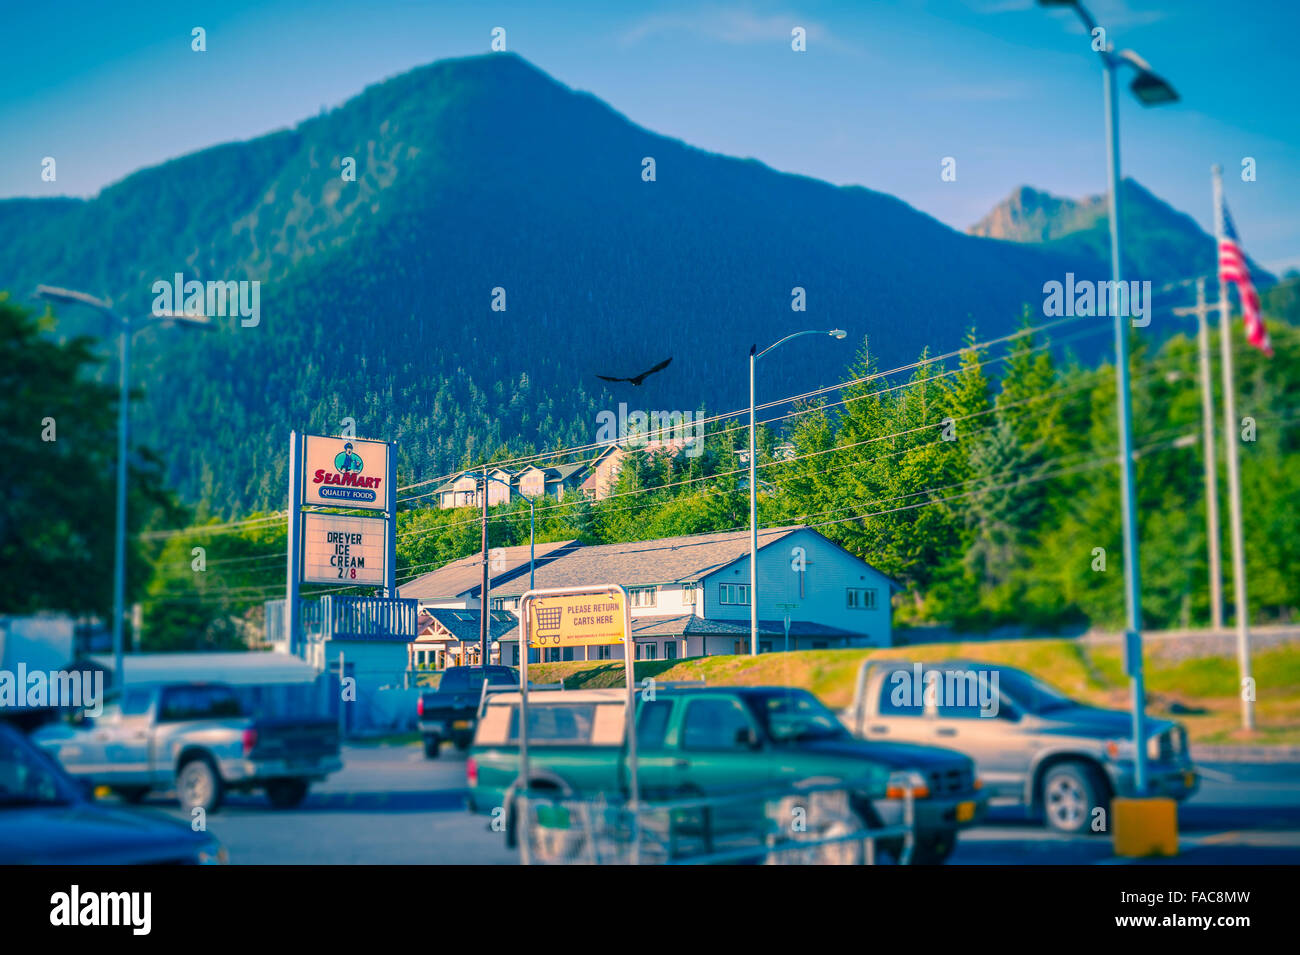 Ein Blick auf Hafen Berg aus Seamart Supermarkt in Sitka, Alaska, USA.  Fotografie von Jeffrey Wickett, Northlight Foto Stockfoto